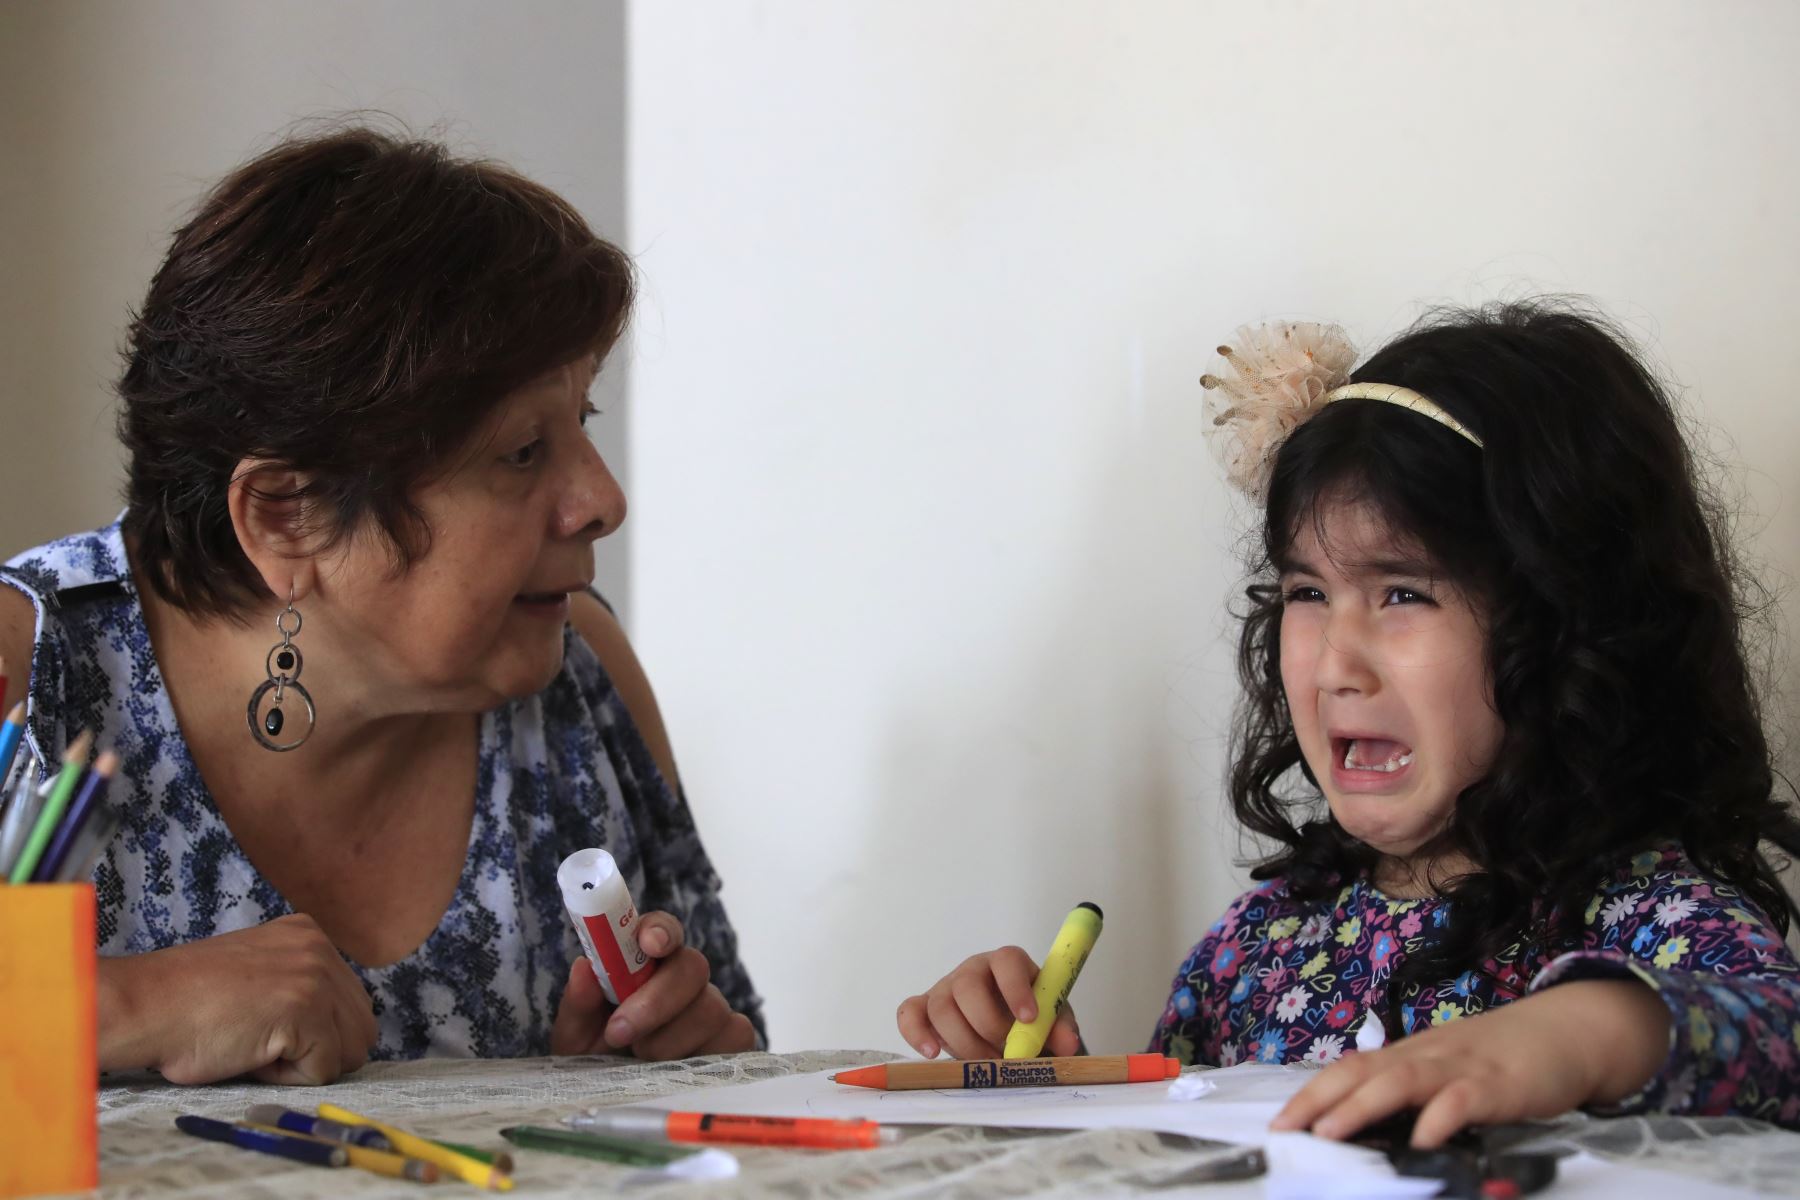 El rol de los padres resulta fundamental para ayudarlos a superar problemas en el habla. Foto: ANDINA/Juan Carlos Guzmán Negrini.